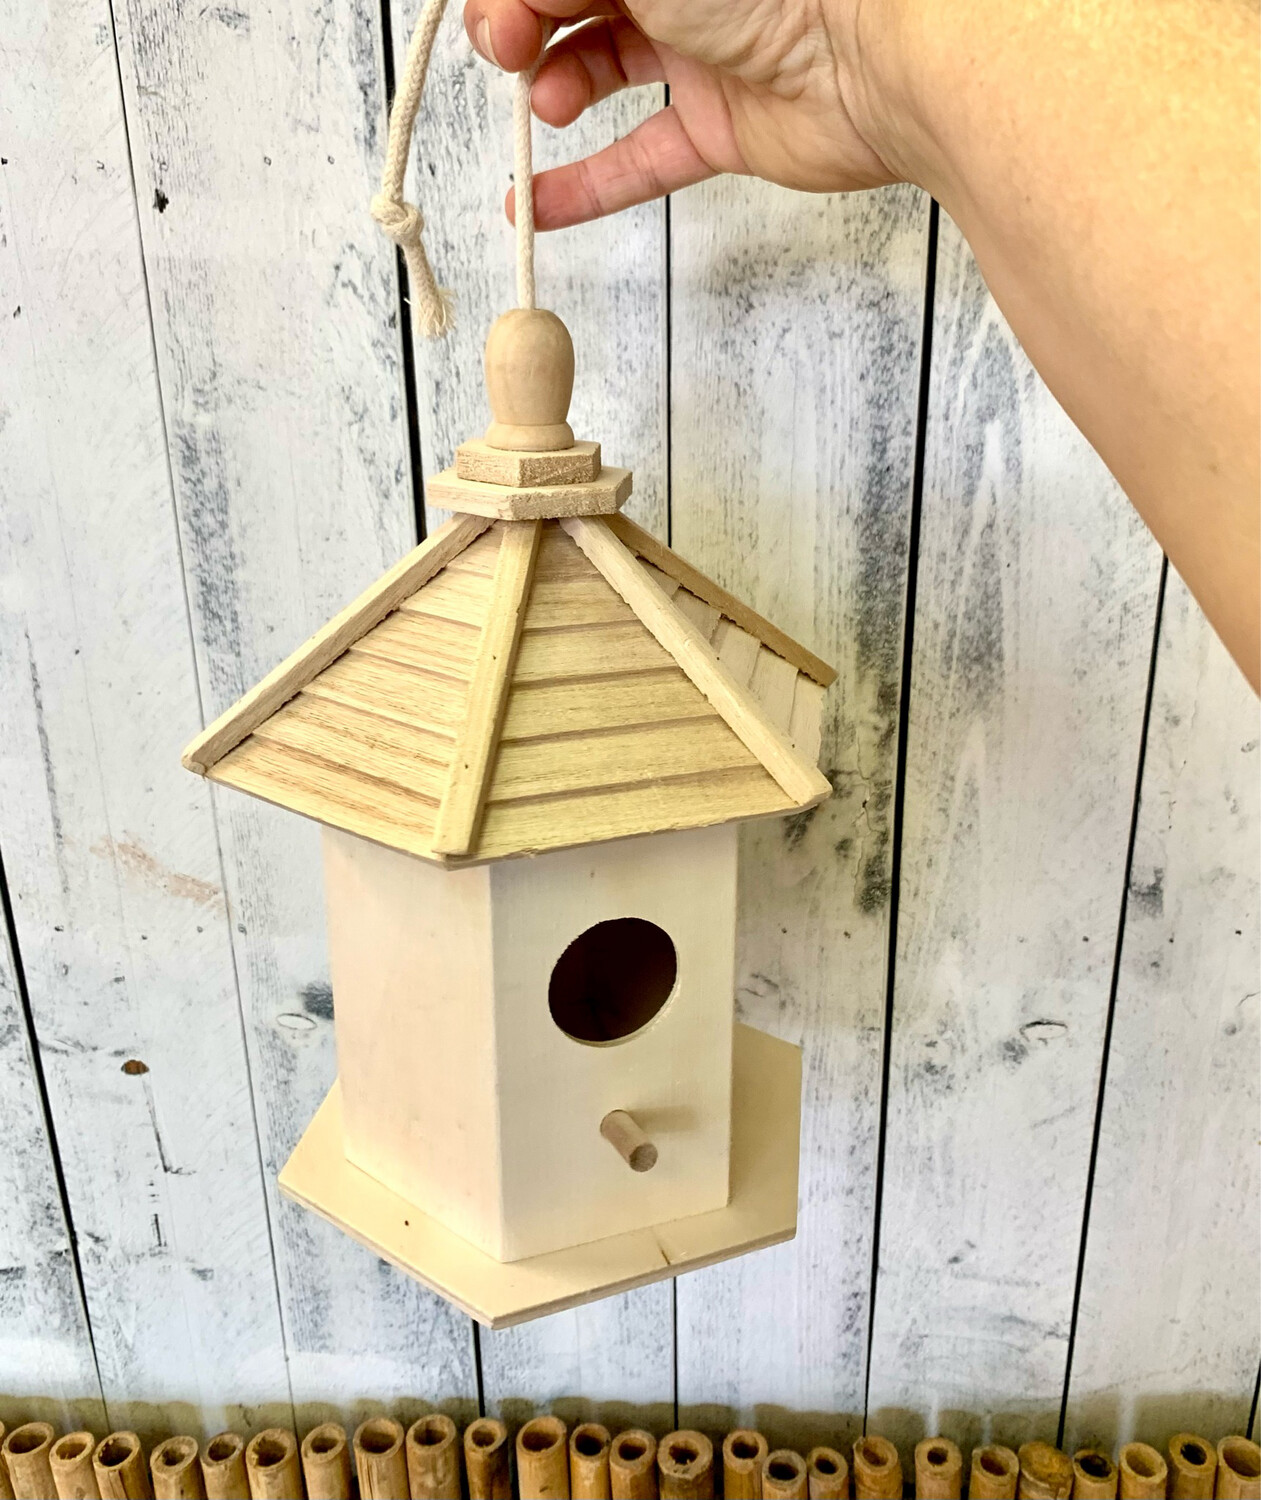 6.5” Wood Gazebo Birdhouse Painting Set - Craft Kit 